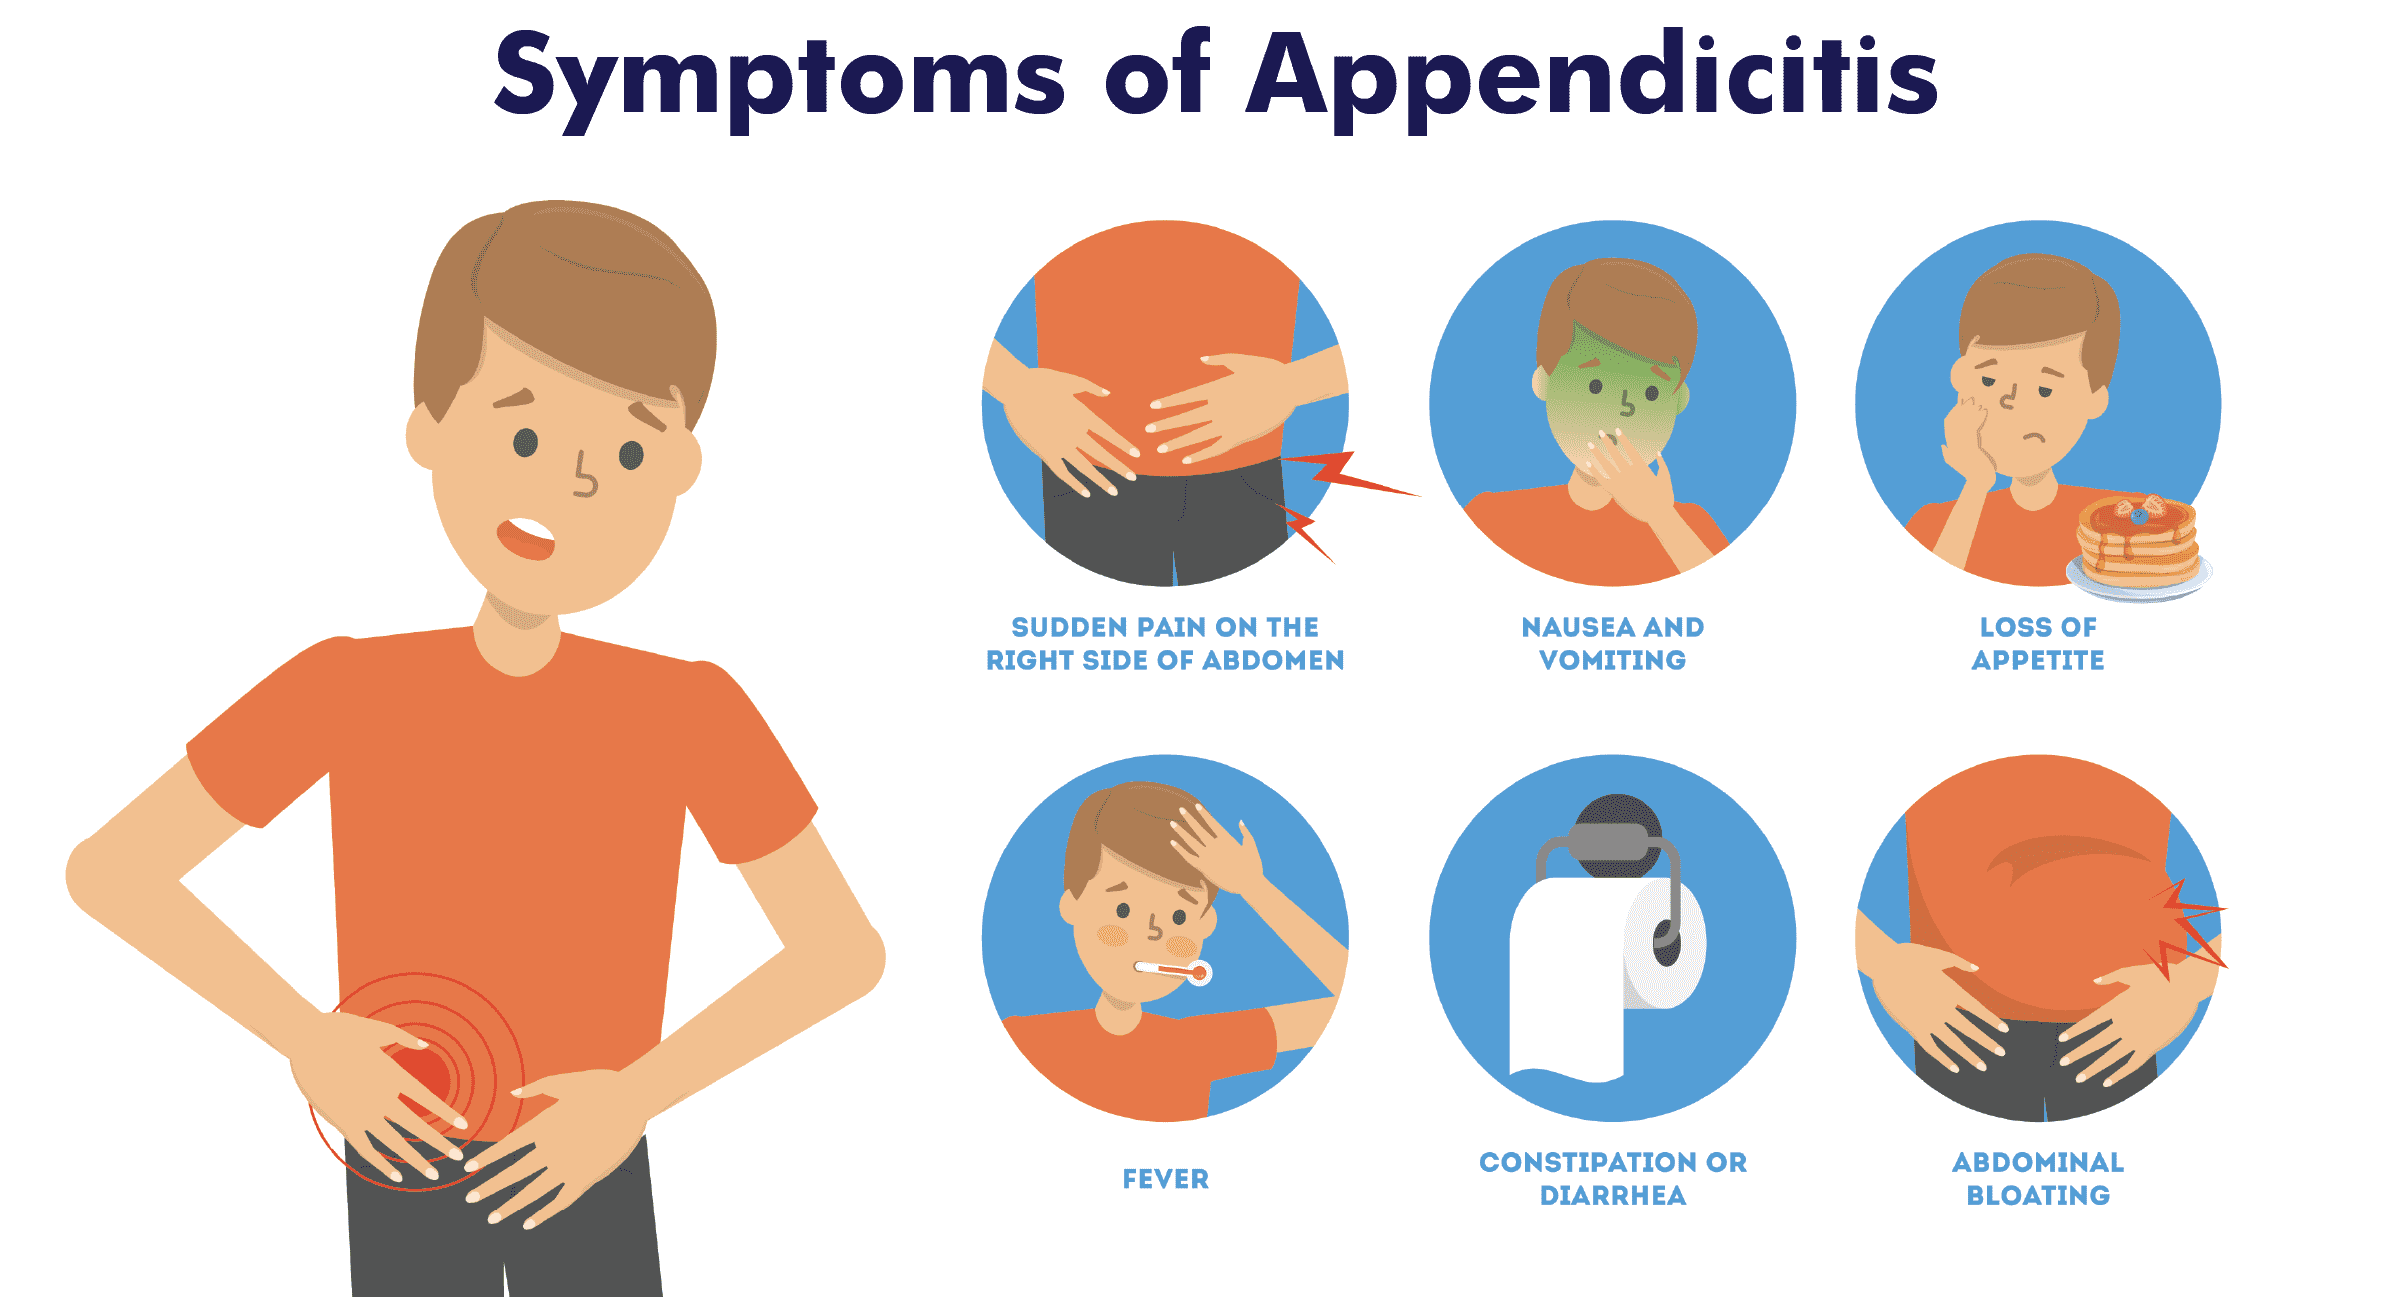 Causes of appendicitis